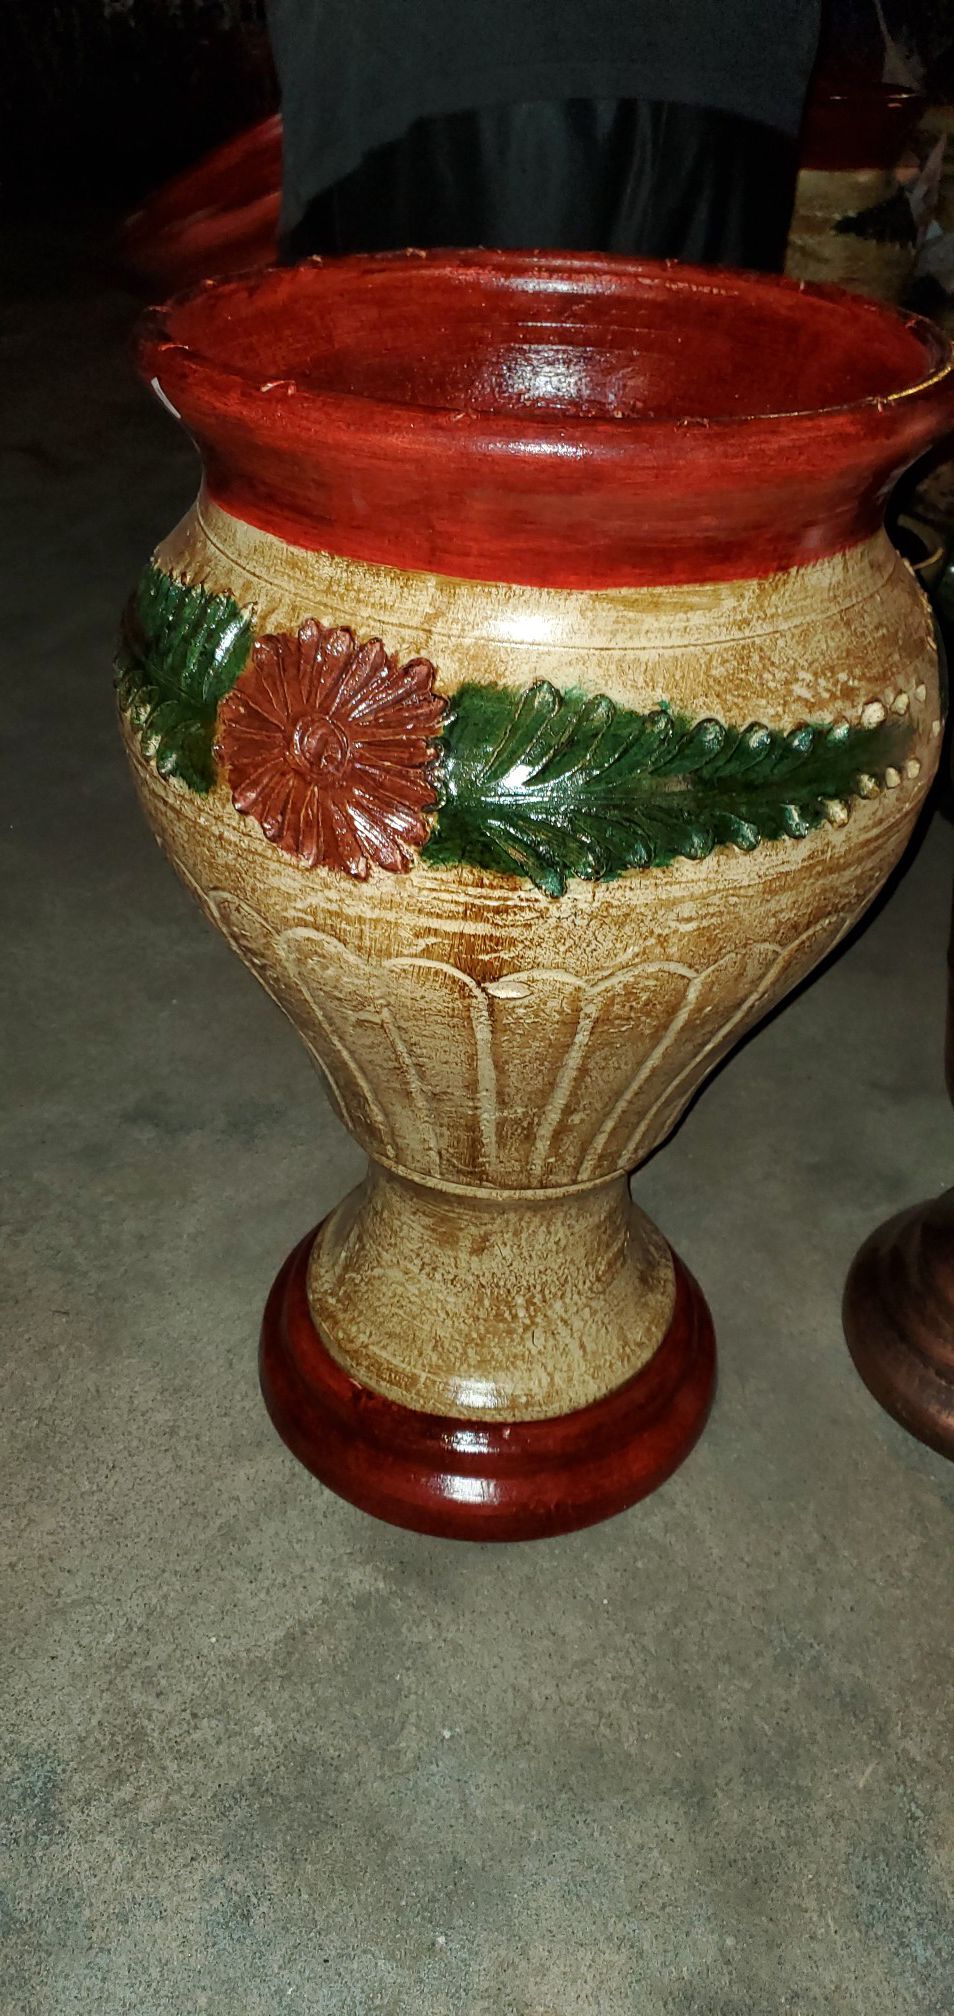 Clay Flower Pot